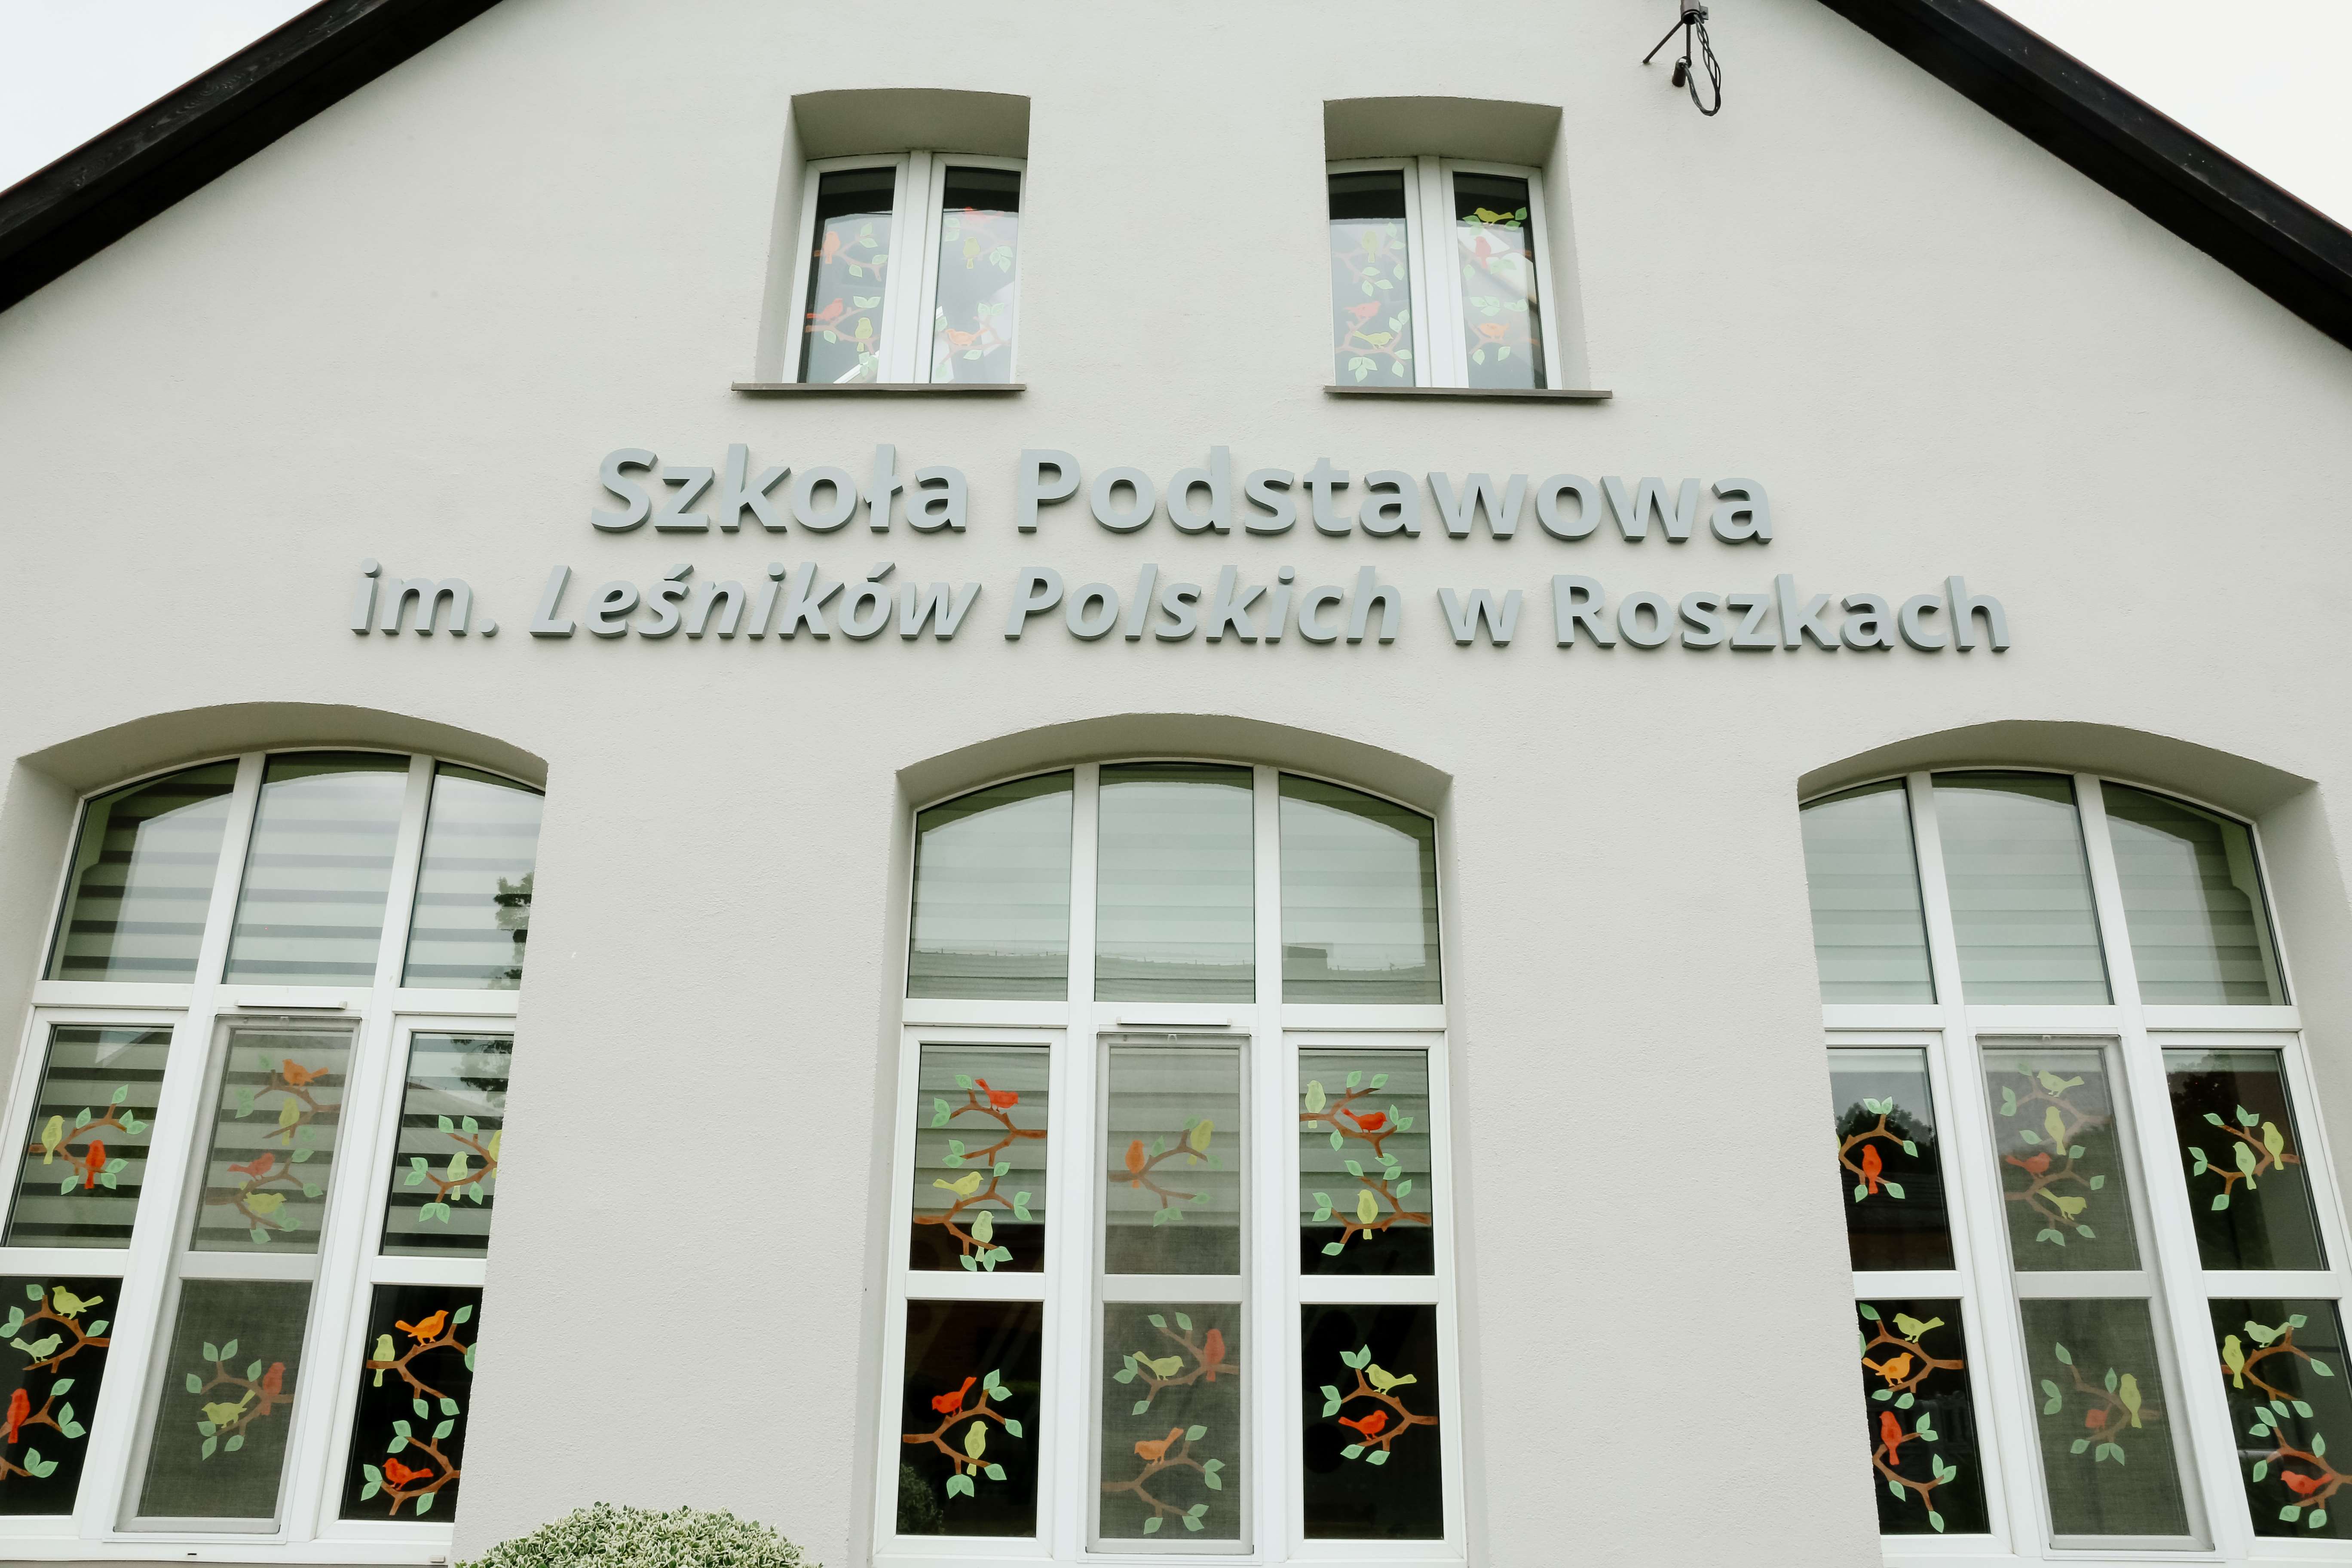 Zdjęcie przedstawia zewnętrzną ścianę budynku szkoły z pełną nazwą i oknami, w których widać wycięte z papieru gałęzie drzew i ptaki. Źródło: Archiwum SP w Roszkach